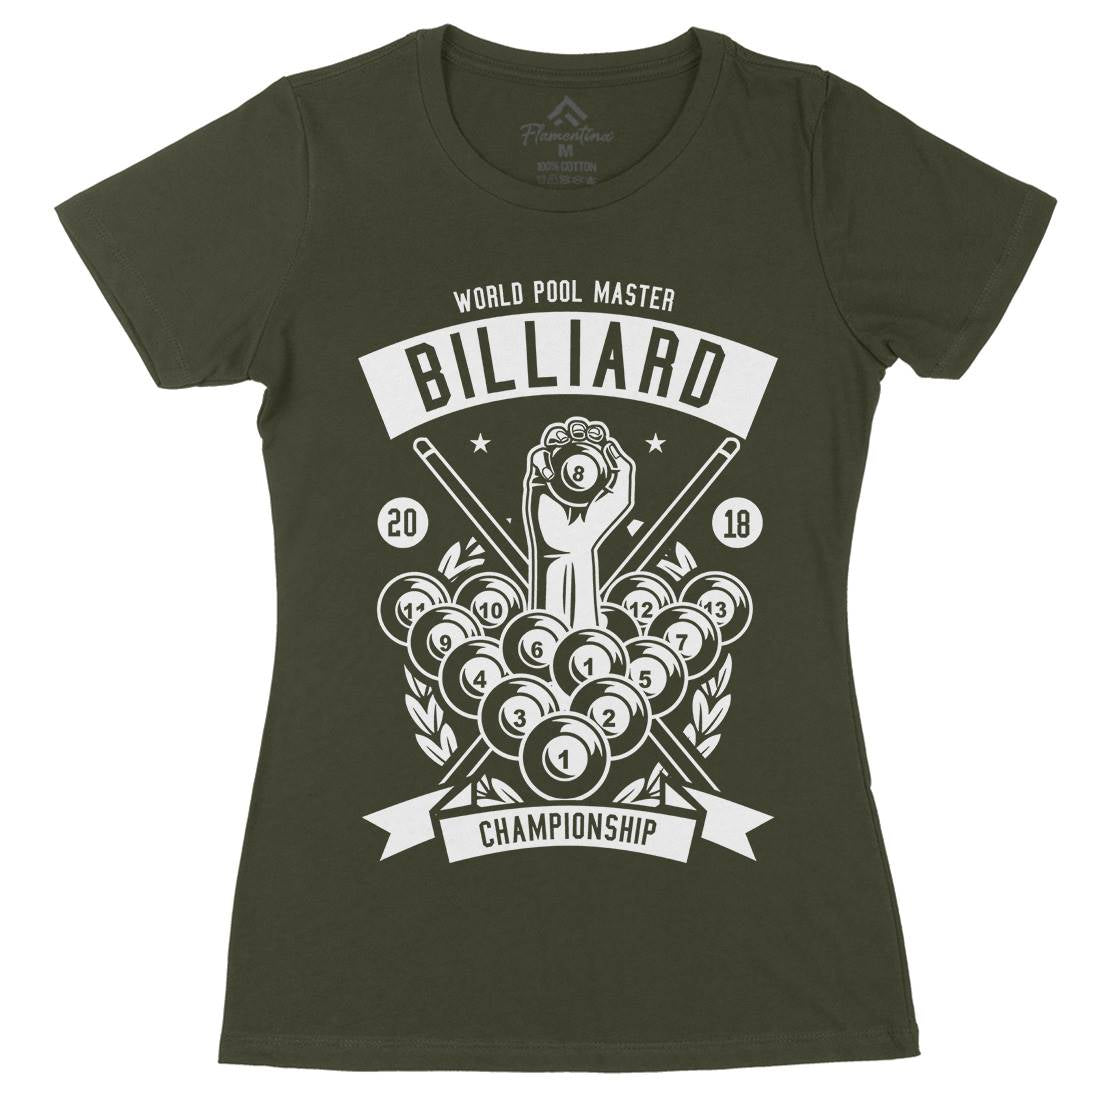 Billiard Championship Womens Organic Crew Neck T-Shirt Sport B499